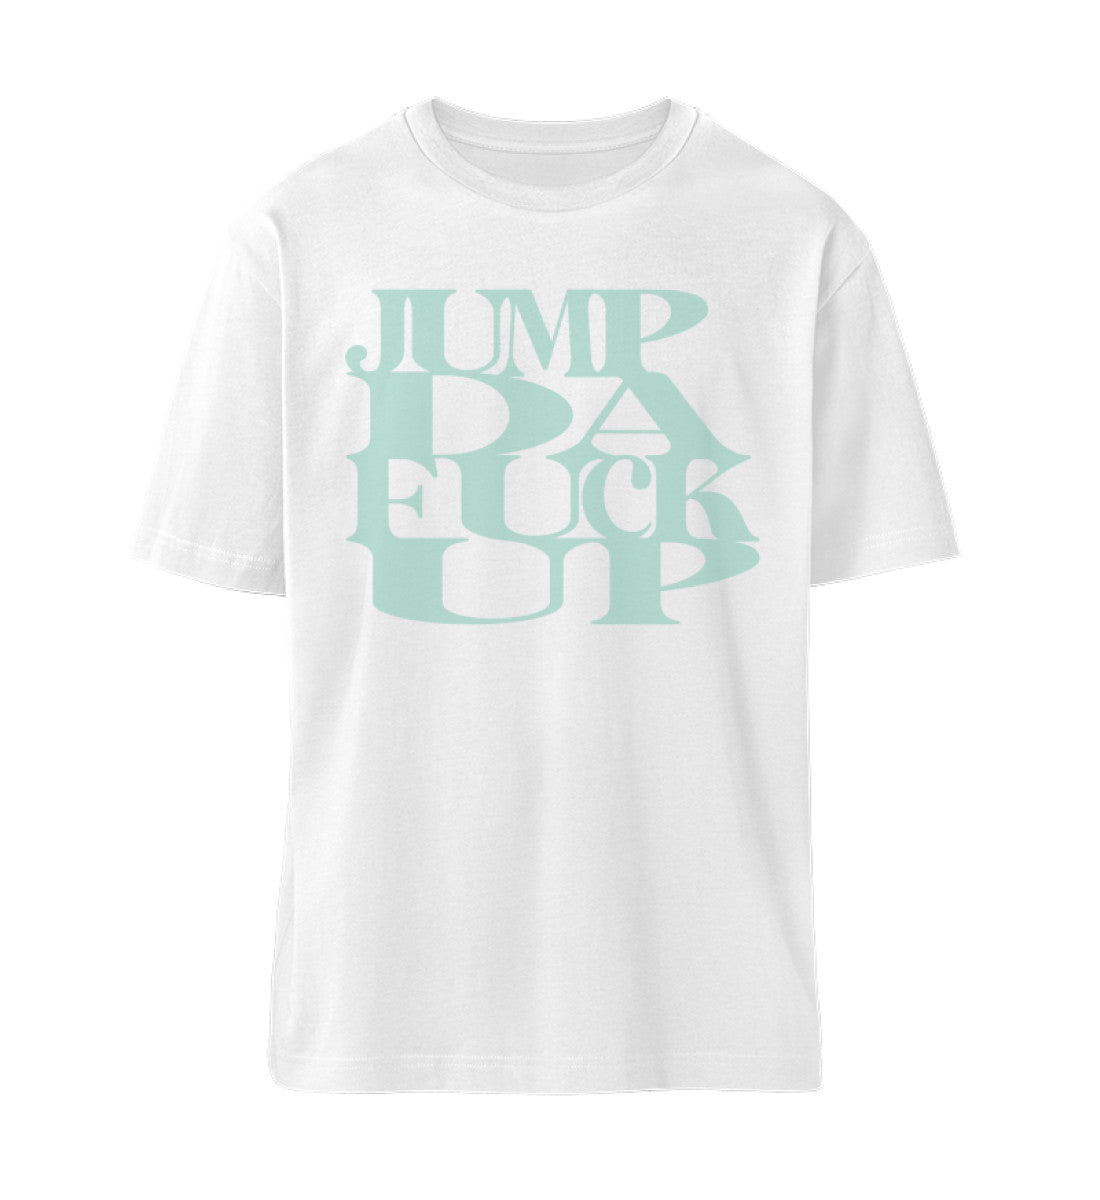 Weißes T-Shirt Unisex Relaxed Fit für Frauen und Männer bedruckt mit dem Design der Roger Rockawoo Kollektion Mountainbike Freeride jump da fuck up